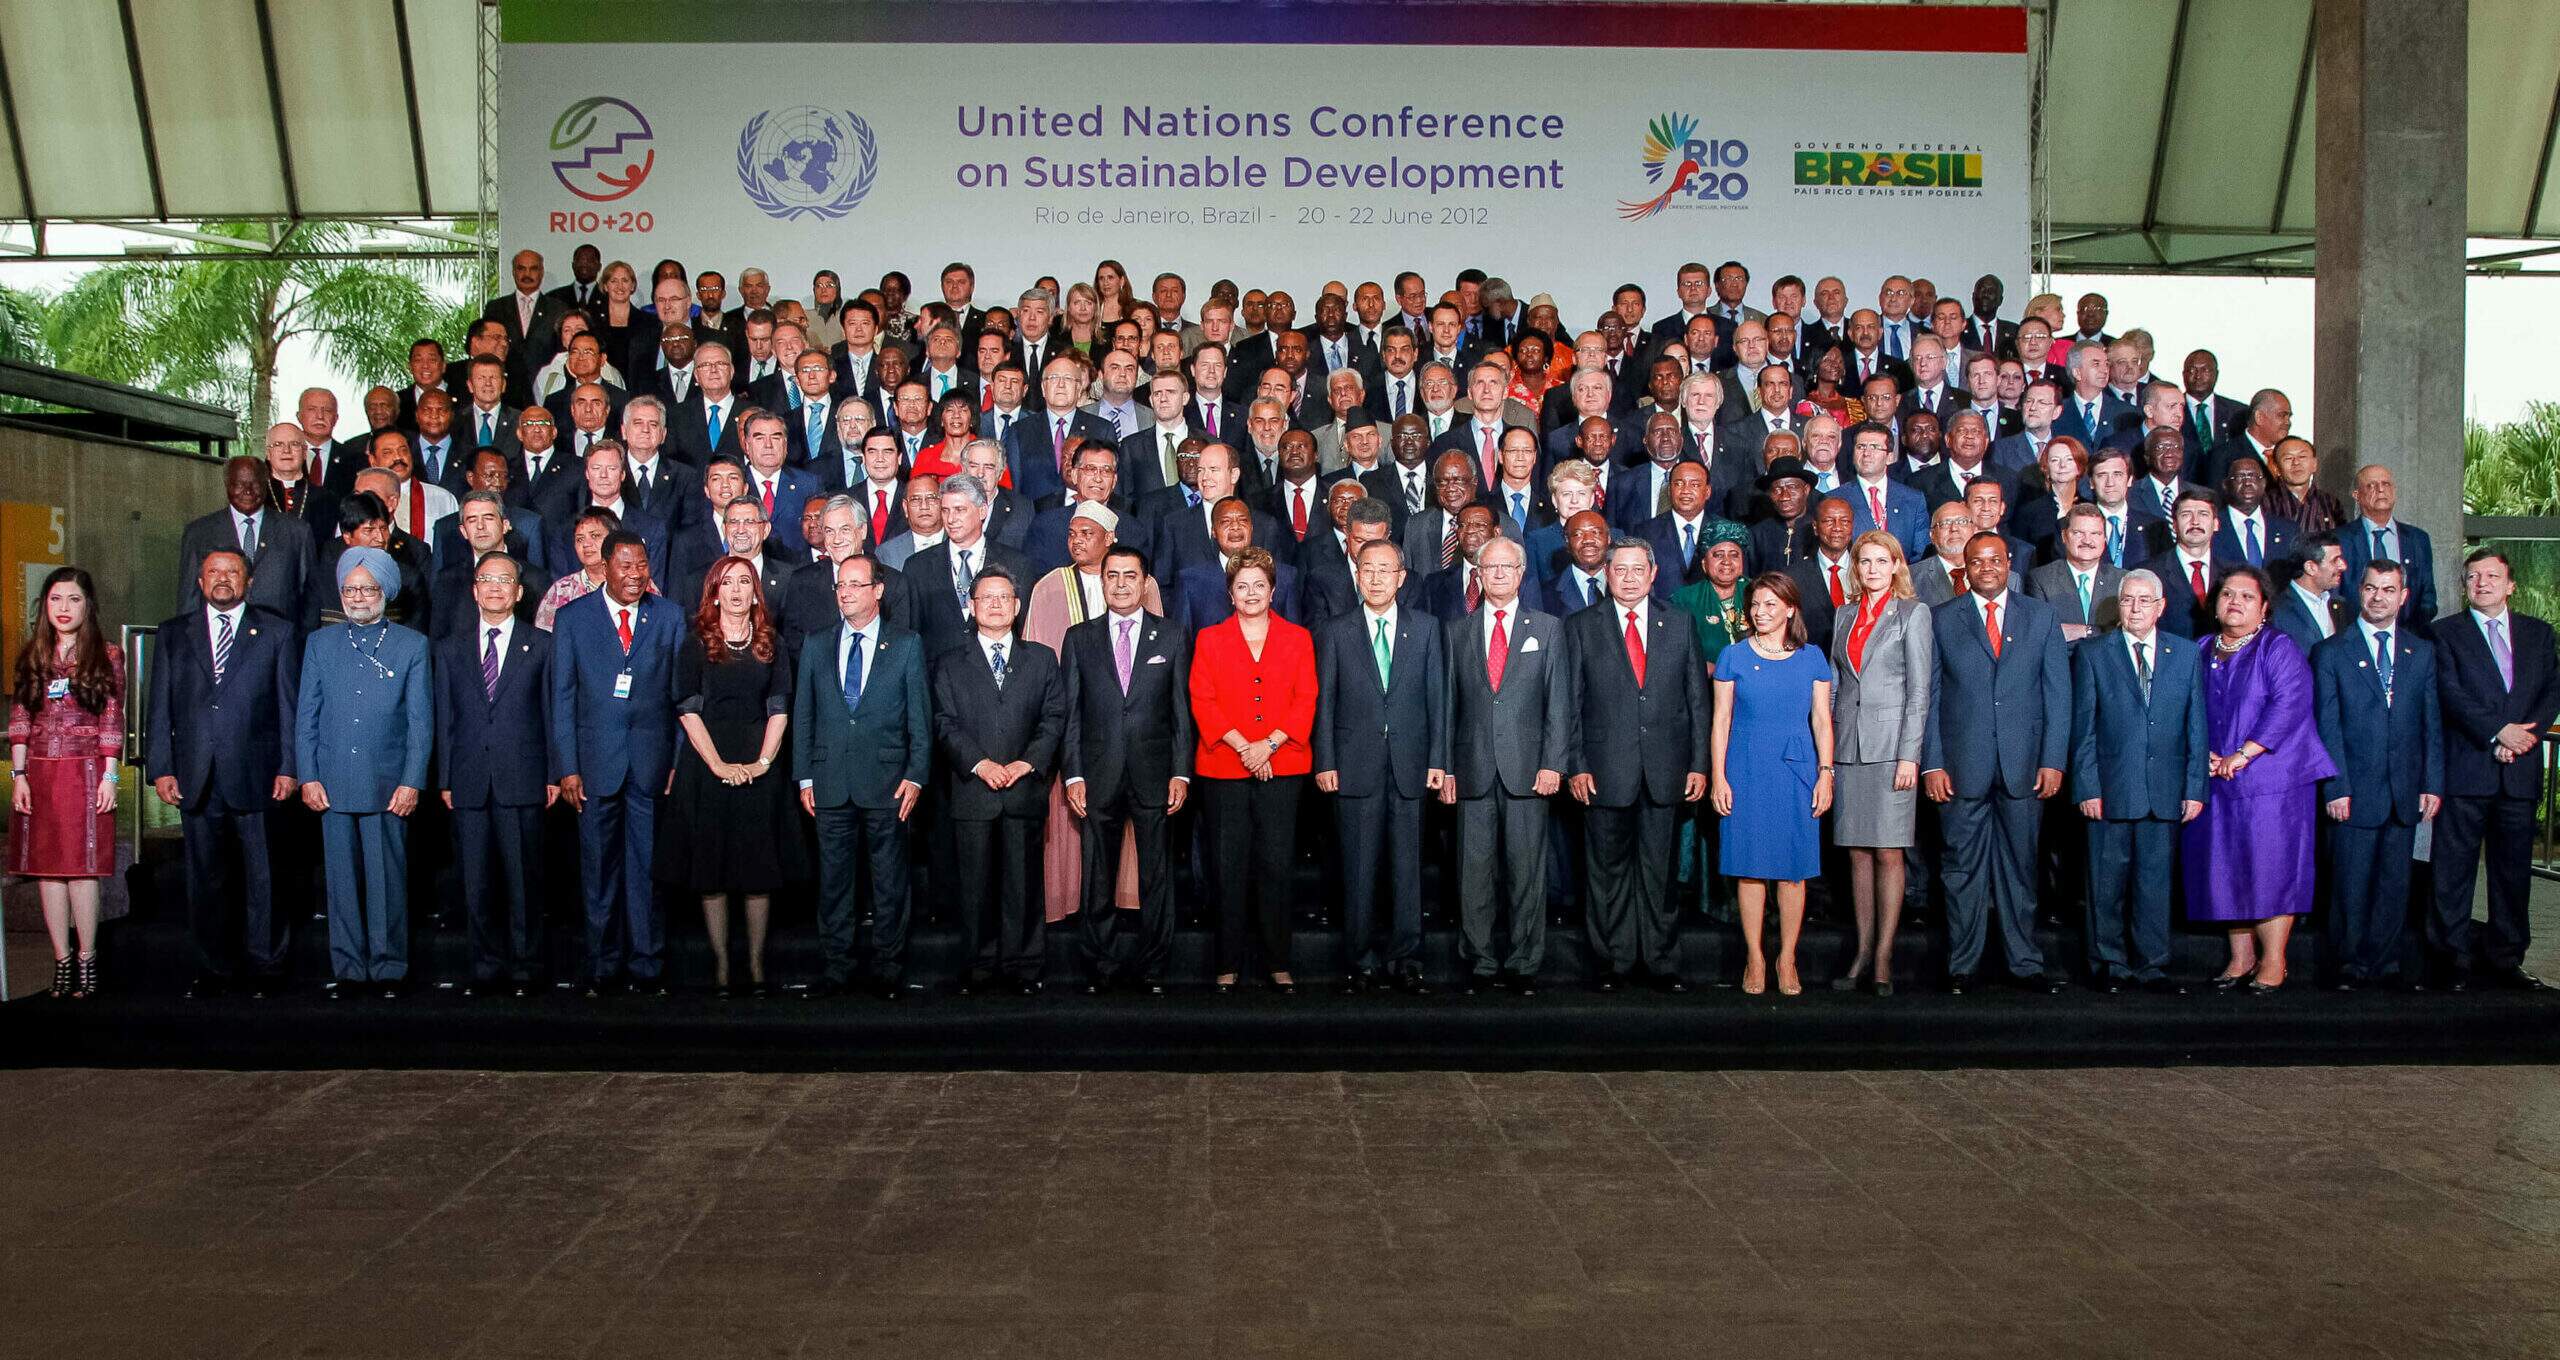 Na imagem, líderes mundiais posando em frente ao painel da Rio+20. Conteúdo sobre os Objetivos de Desenvolvimento Sustentável.